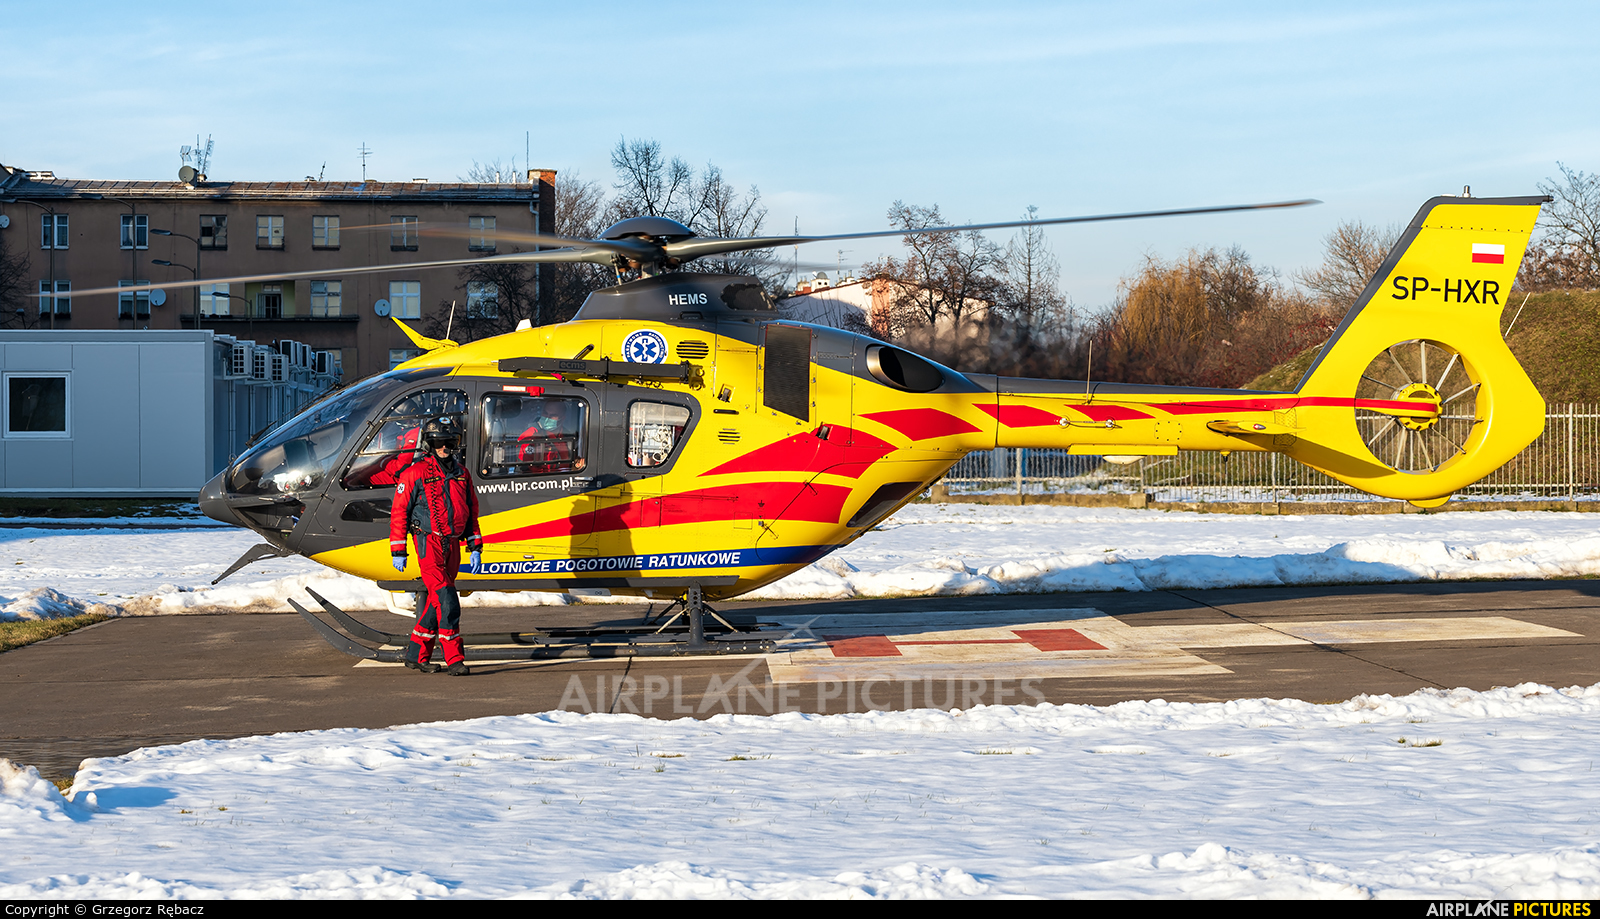 Polish Medical Air Rescue - Lotnicze Pogotowie Ratunkowe SP-HXR aircraft at Kraków / Specialist Hospital Narutowicz